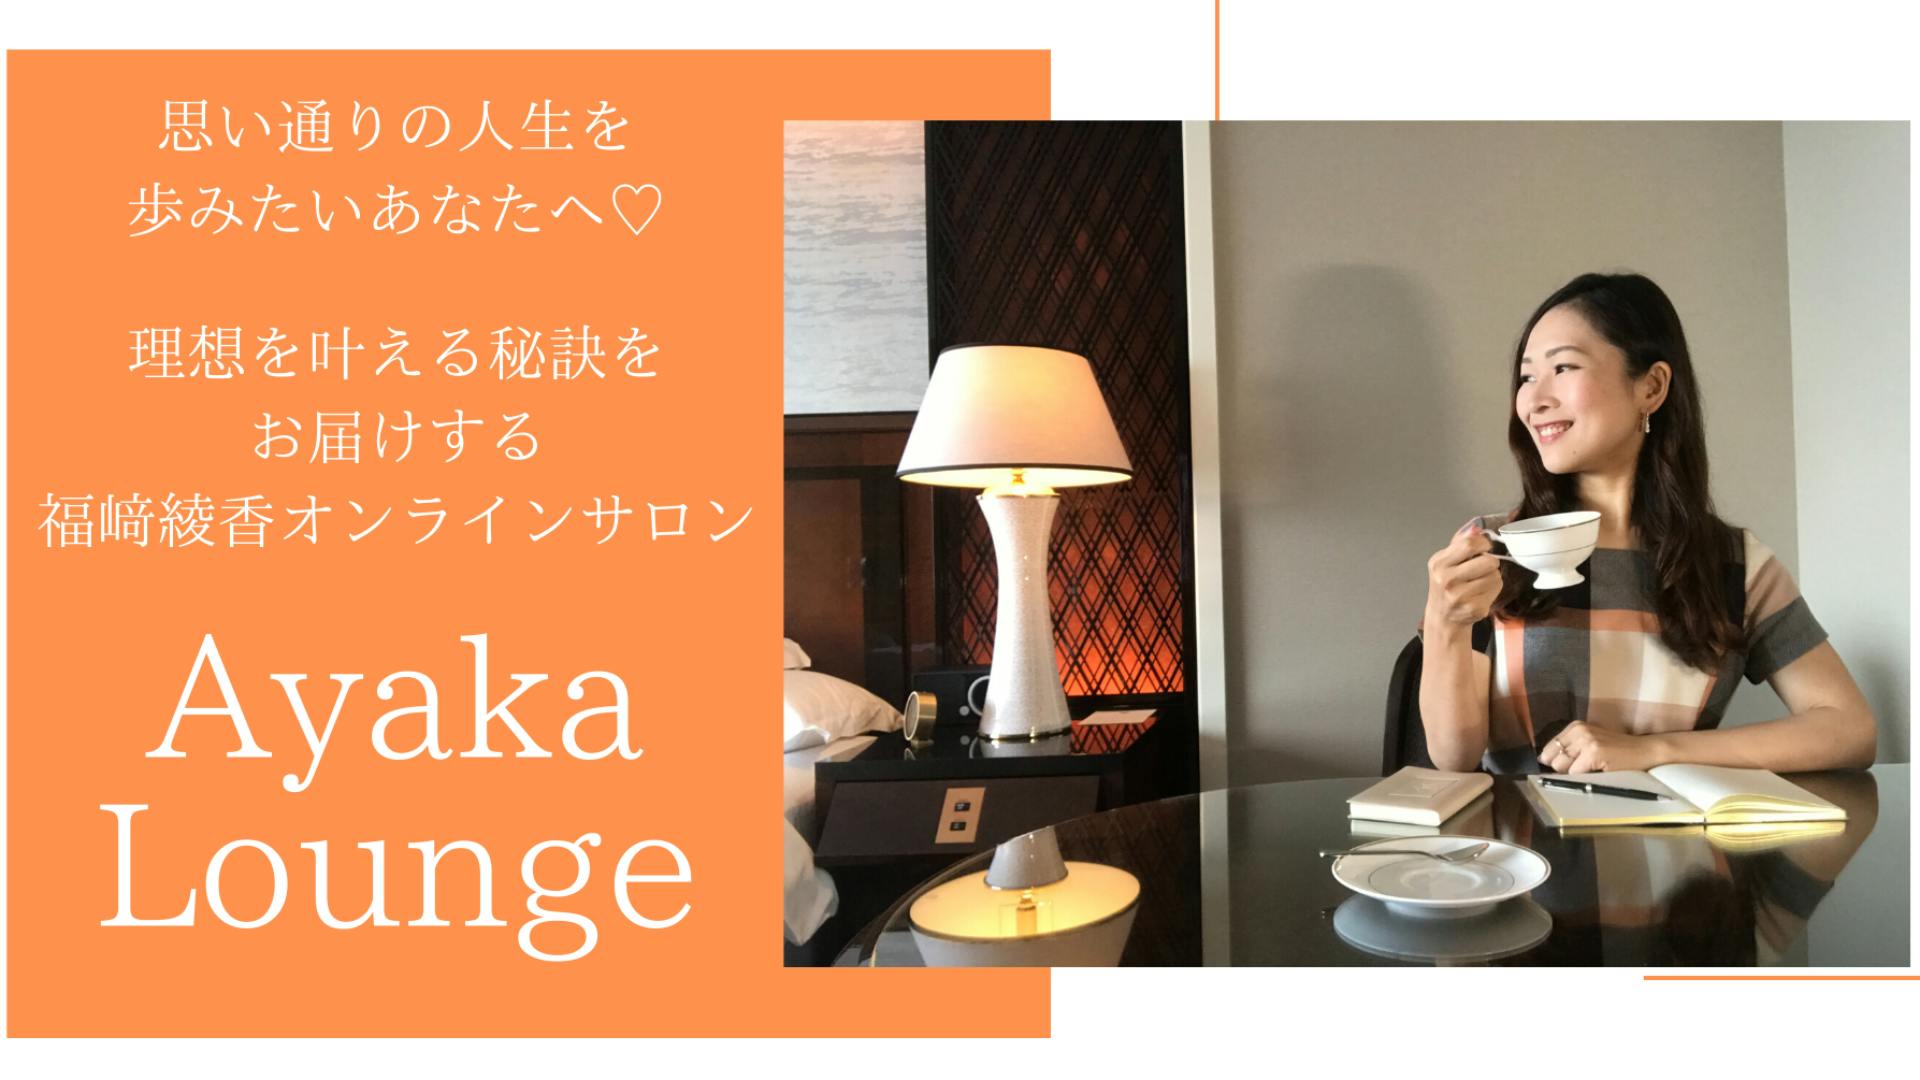 福﨑綾香 - 理想のワークライフスタイルを叶えるAyaka Lounge - DMM オンラインサロン